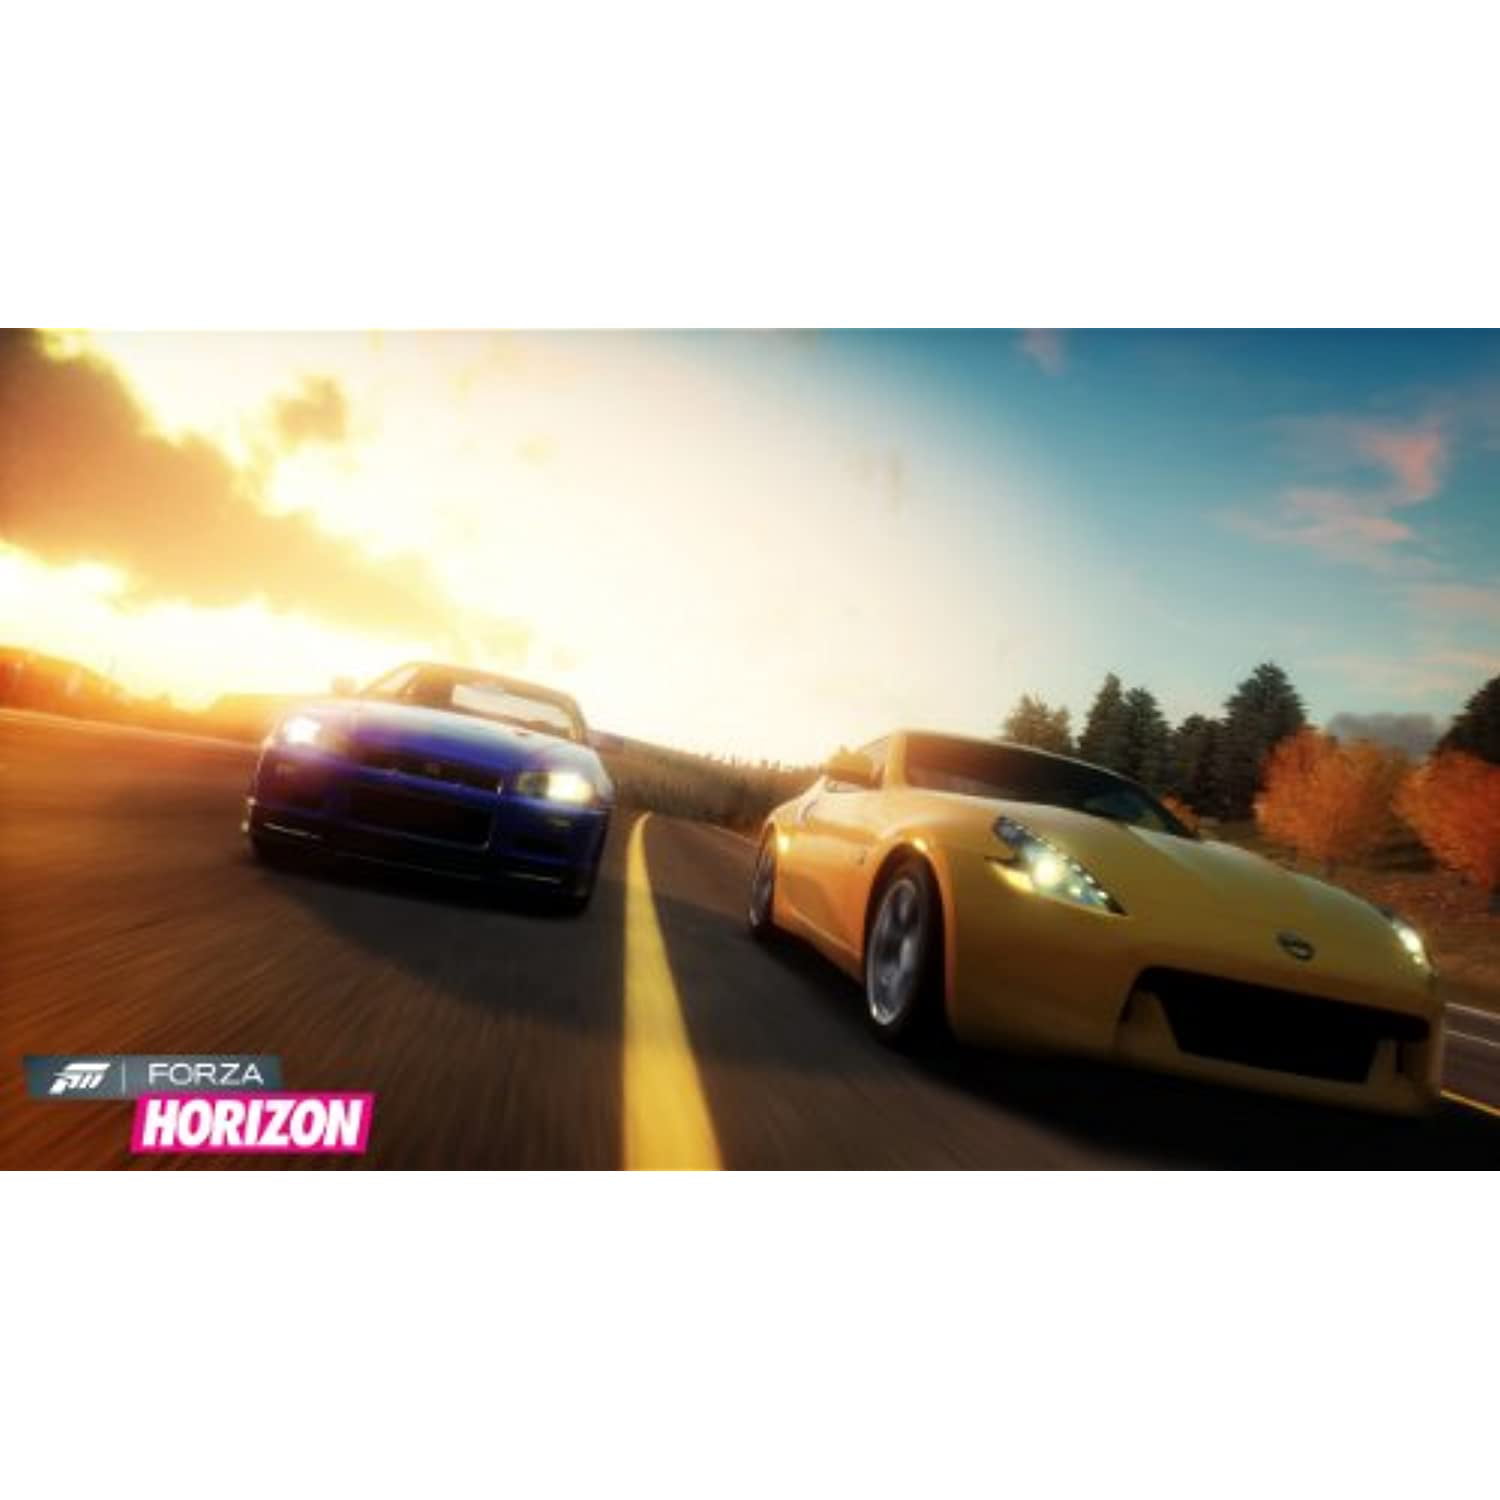 Forza Horizon - Xbox 360 em Promoção na Americanas